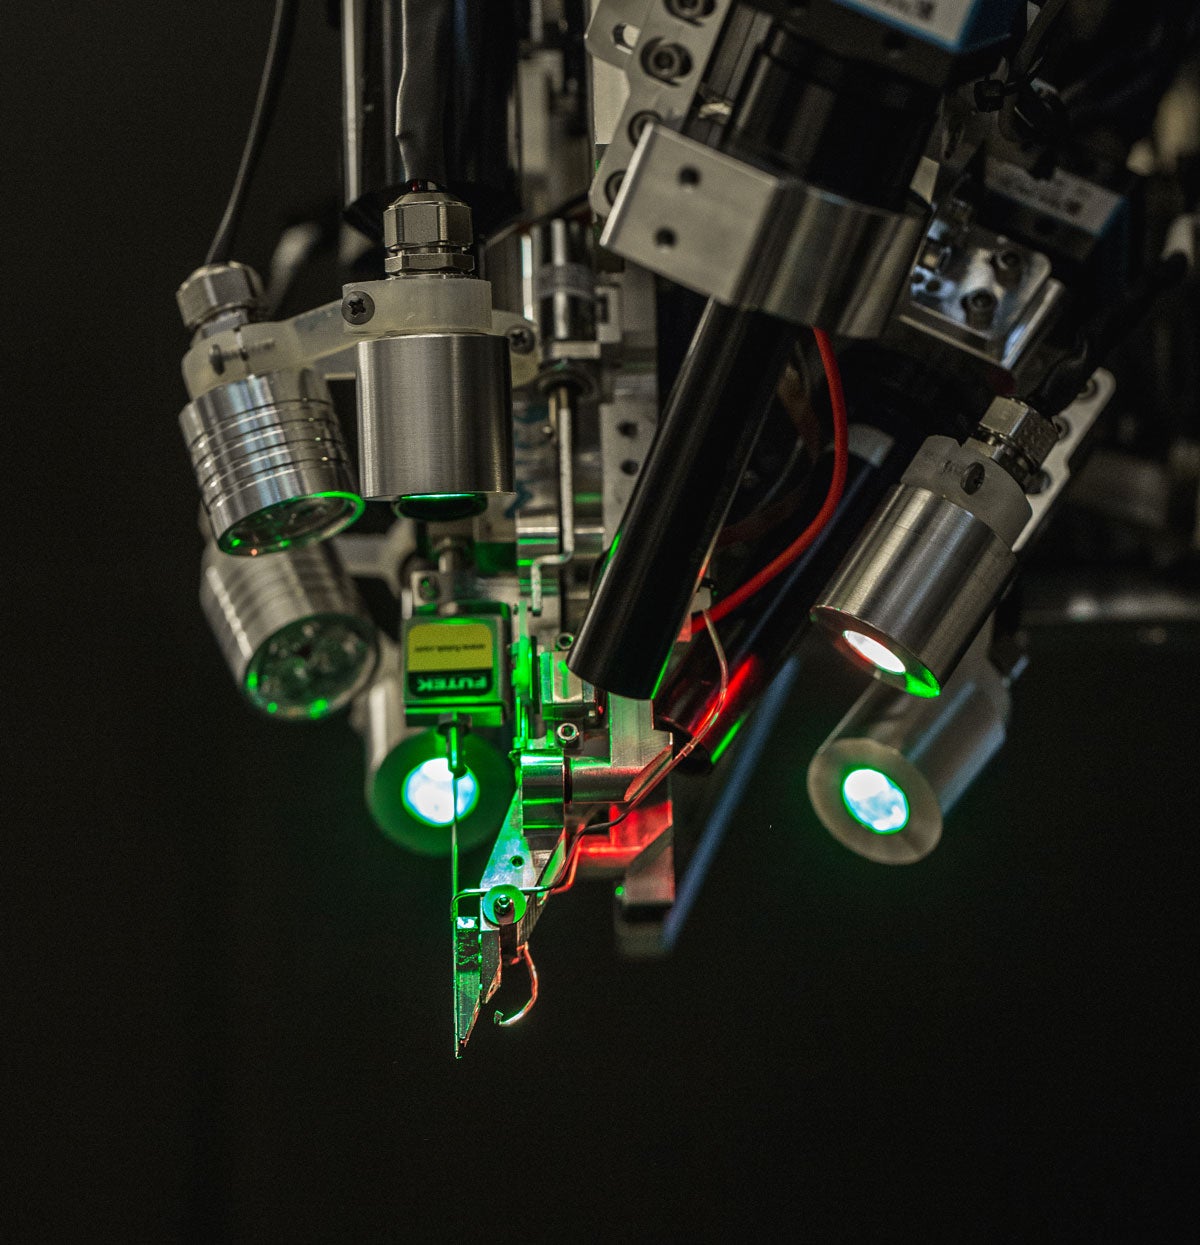 Робот компании Neuralink, на которого возложена ответственность за вживление чипов. Neuralink построила его совместно с компанией Woke, которая занимается промышленным дизайном